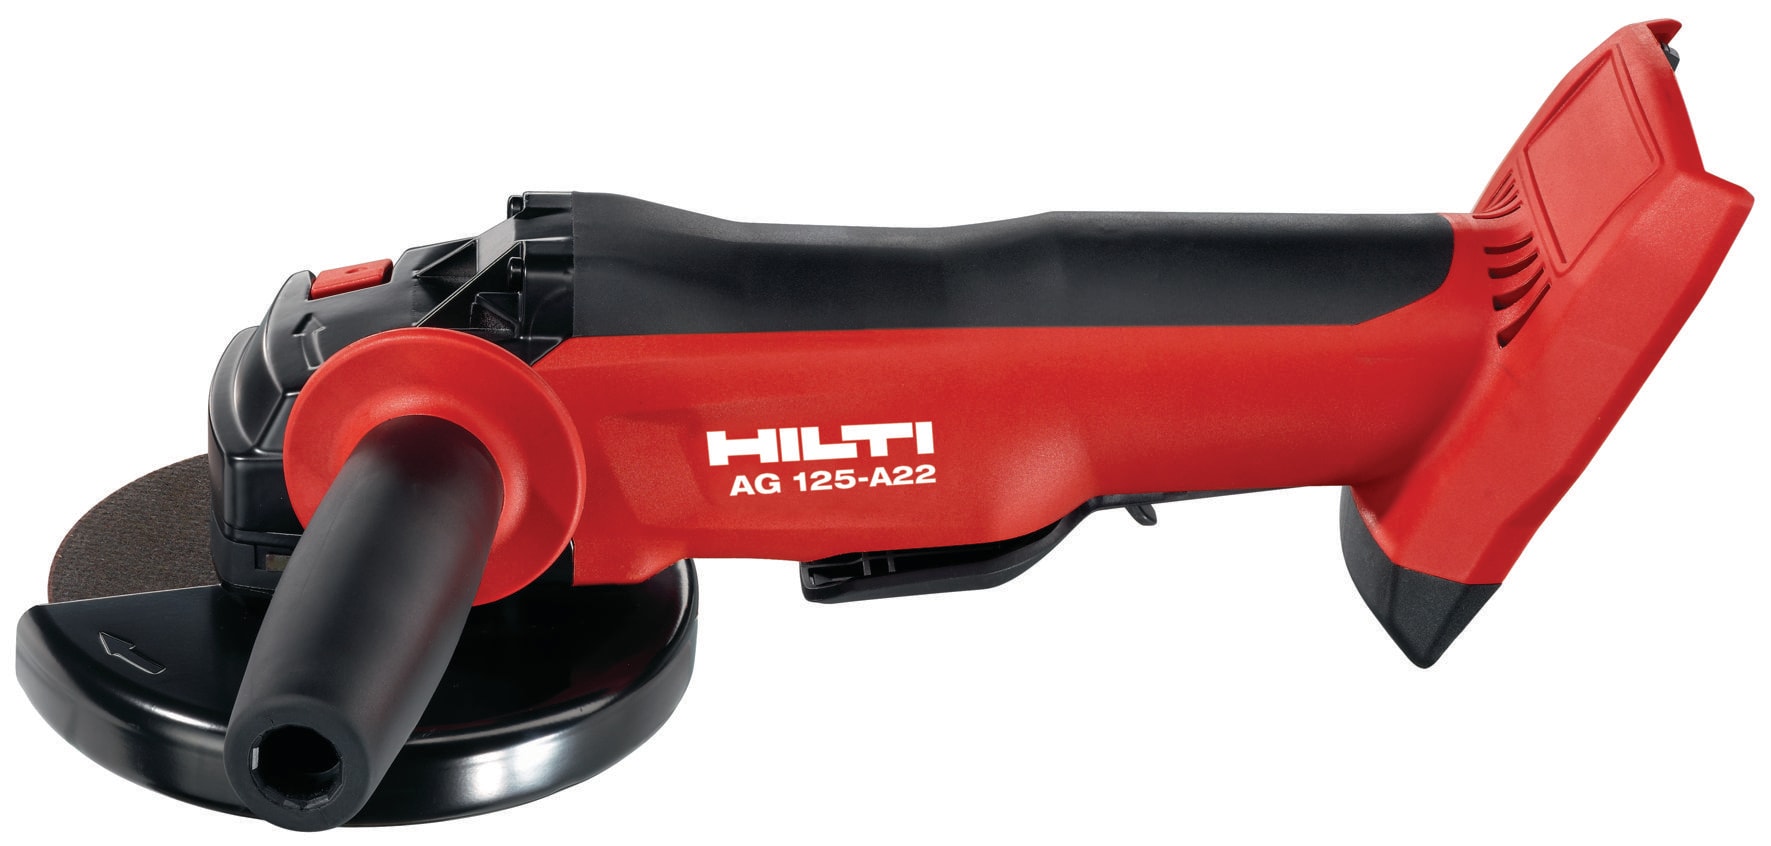 AG 125-A22 充電式アングルグラインダー - 充電式グラインダー - Hilti 